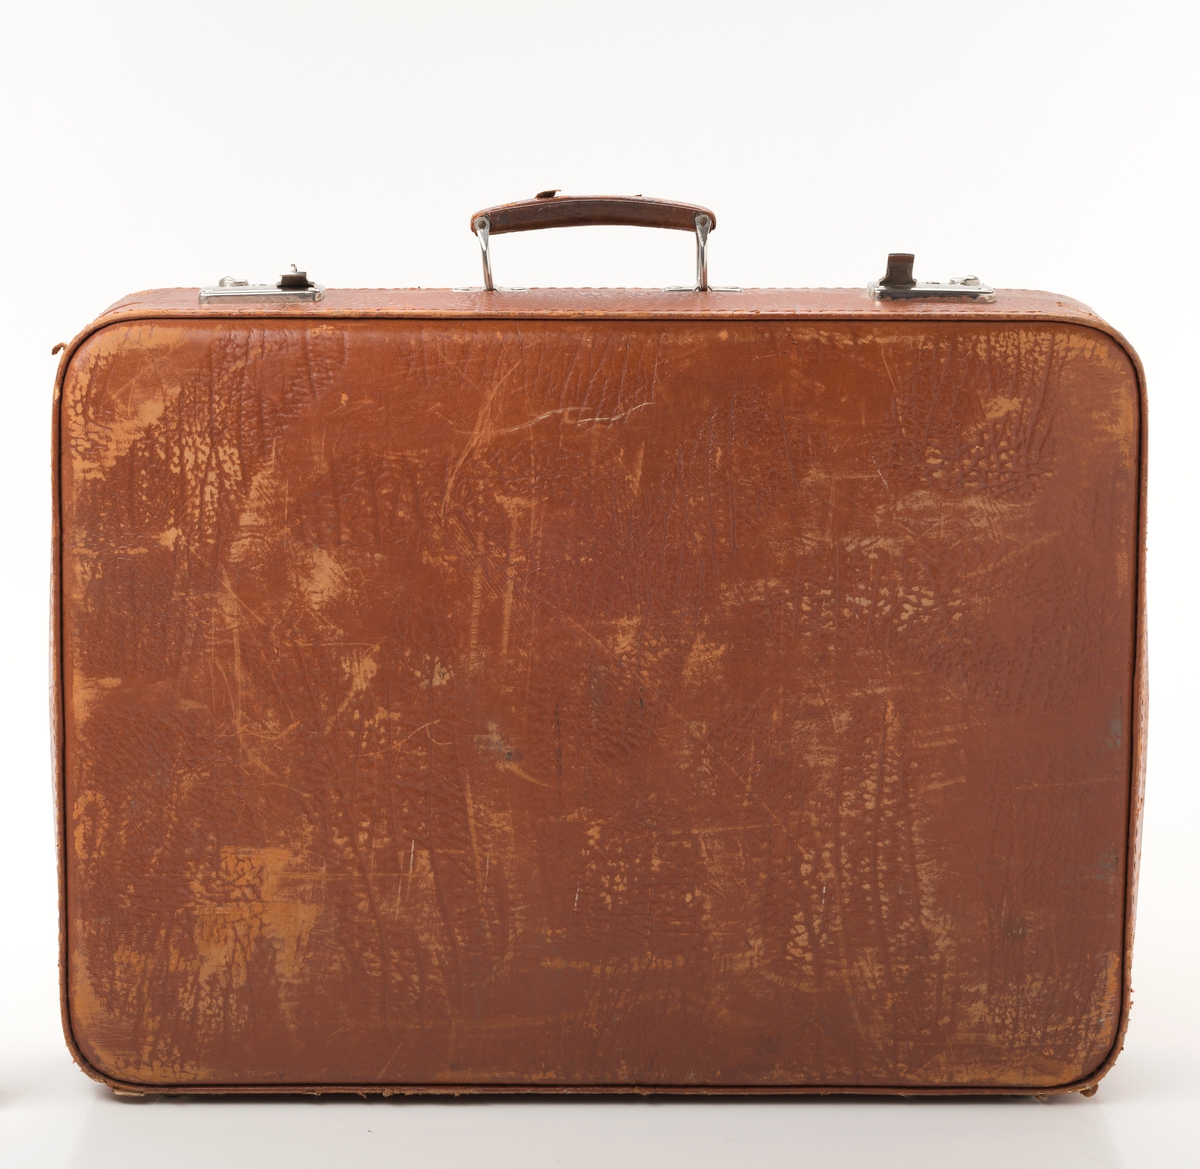 Rektangulær koffert i brunt skinn med ett rom. Innheolder fem uttagbare brett tilpasset koffertens fasong til oppbevaring av småporteføje.